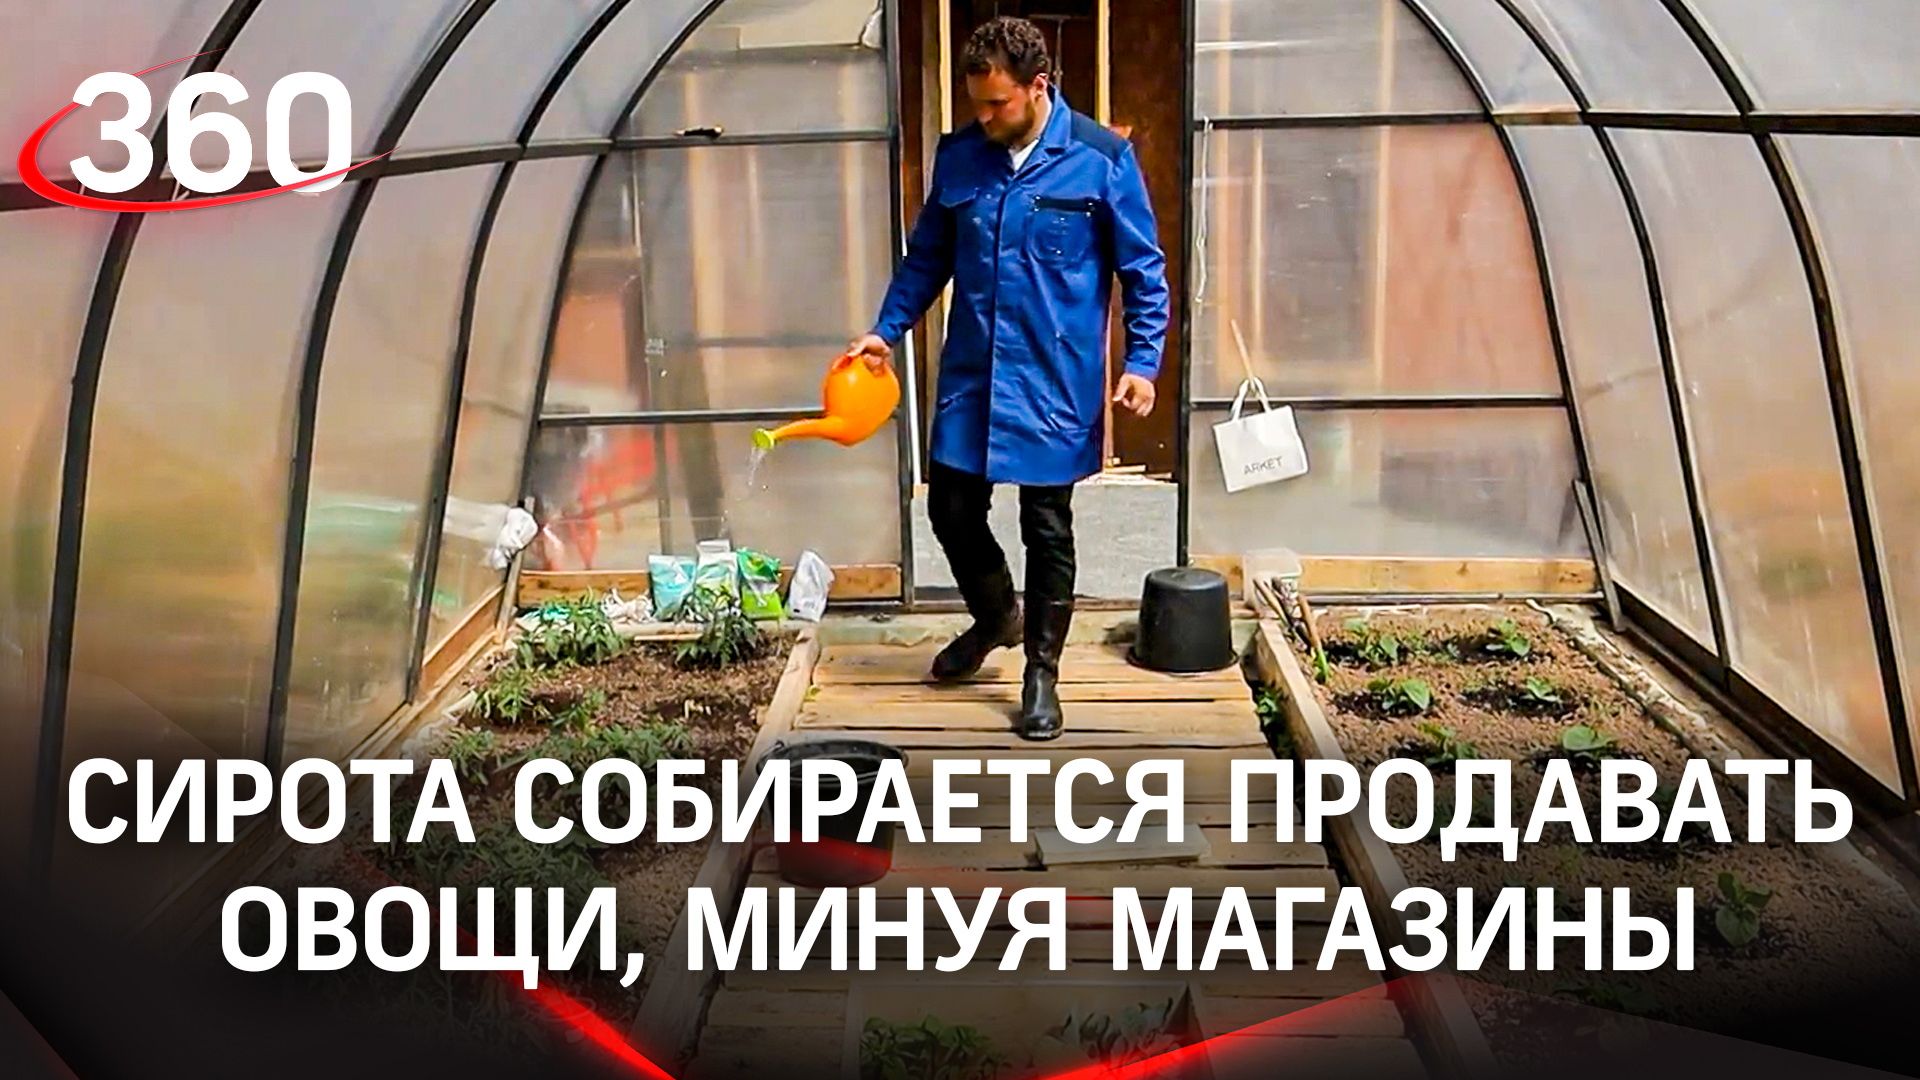 Огурцы прямо с грядки. Подмосковный сыровар Олег Сирота собирается продавать овощи, минуя магазины